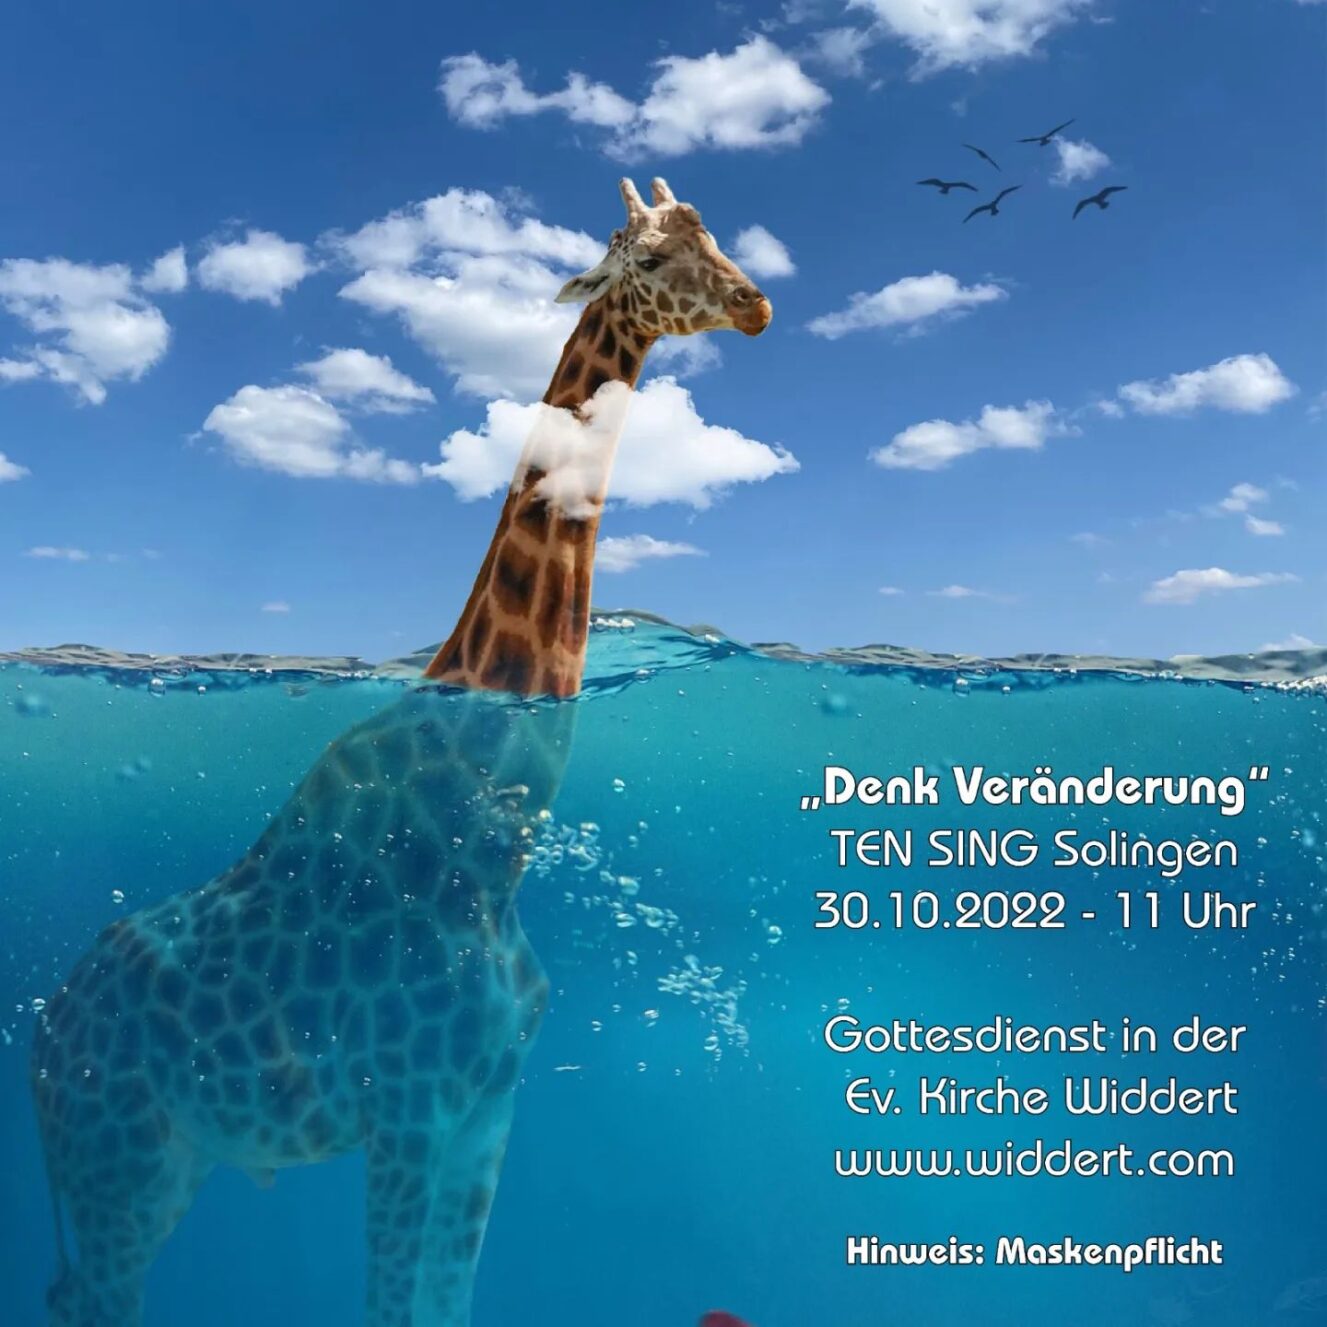 BILD: Eine Giraffe steht bis zum Hals im Wasser TEXT: "Denk Veränderung" TEN SING Solingen 30.10.2022 11 Uhr Gottesdienst in der Ev. Kirche Widdert www.widdert.com Hinwris: Maskenpflicht